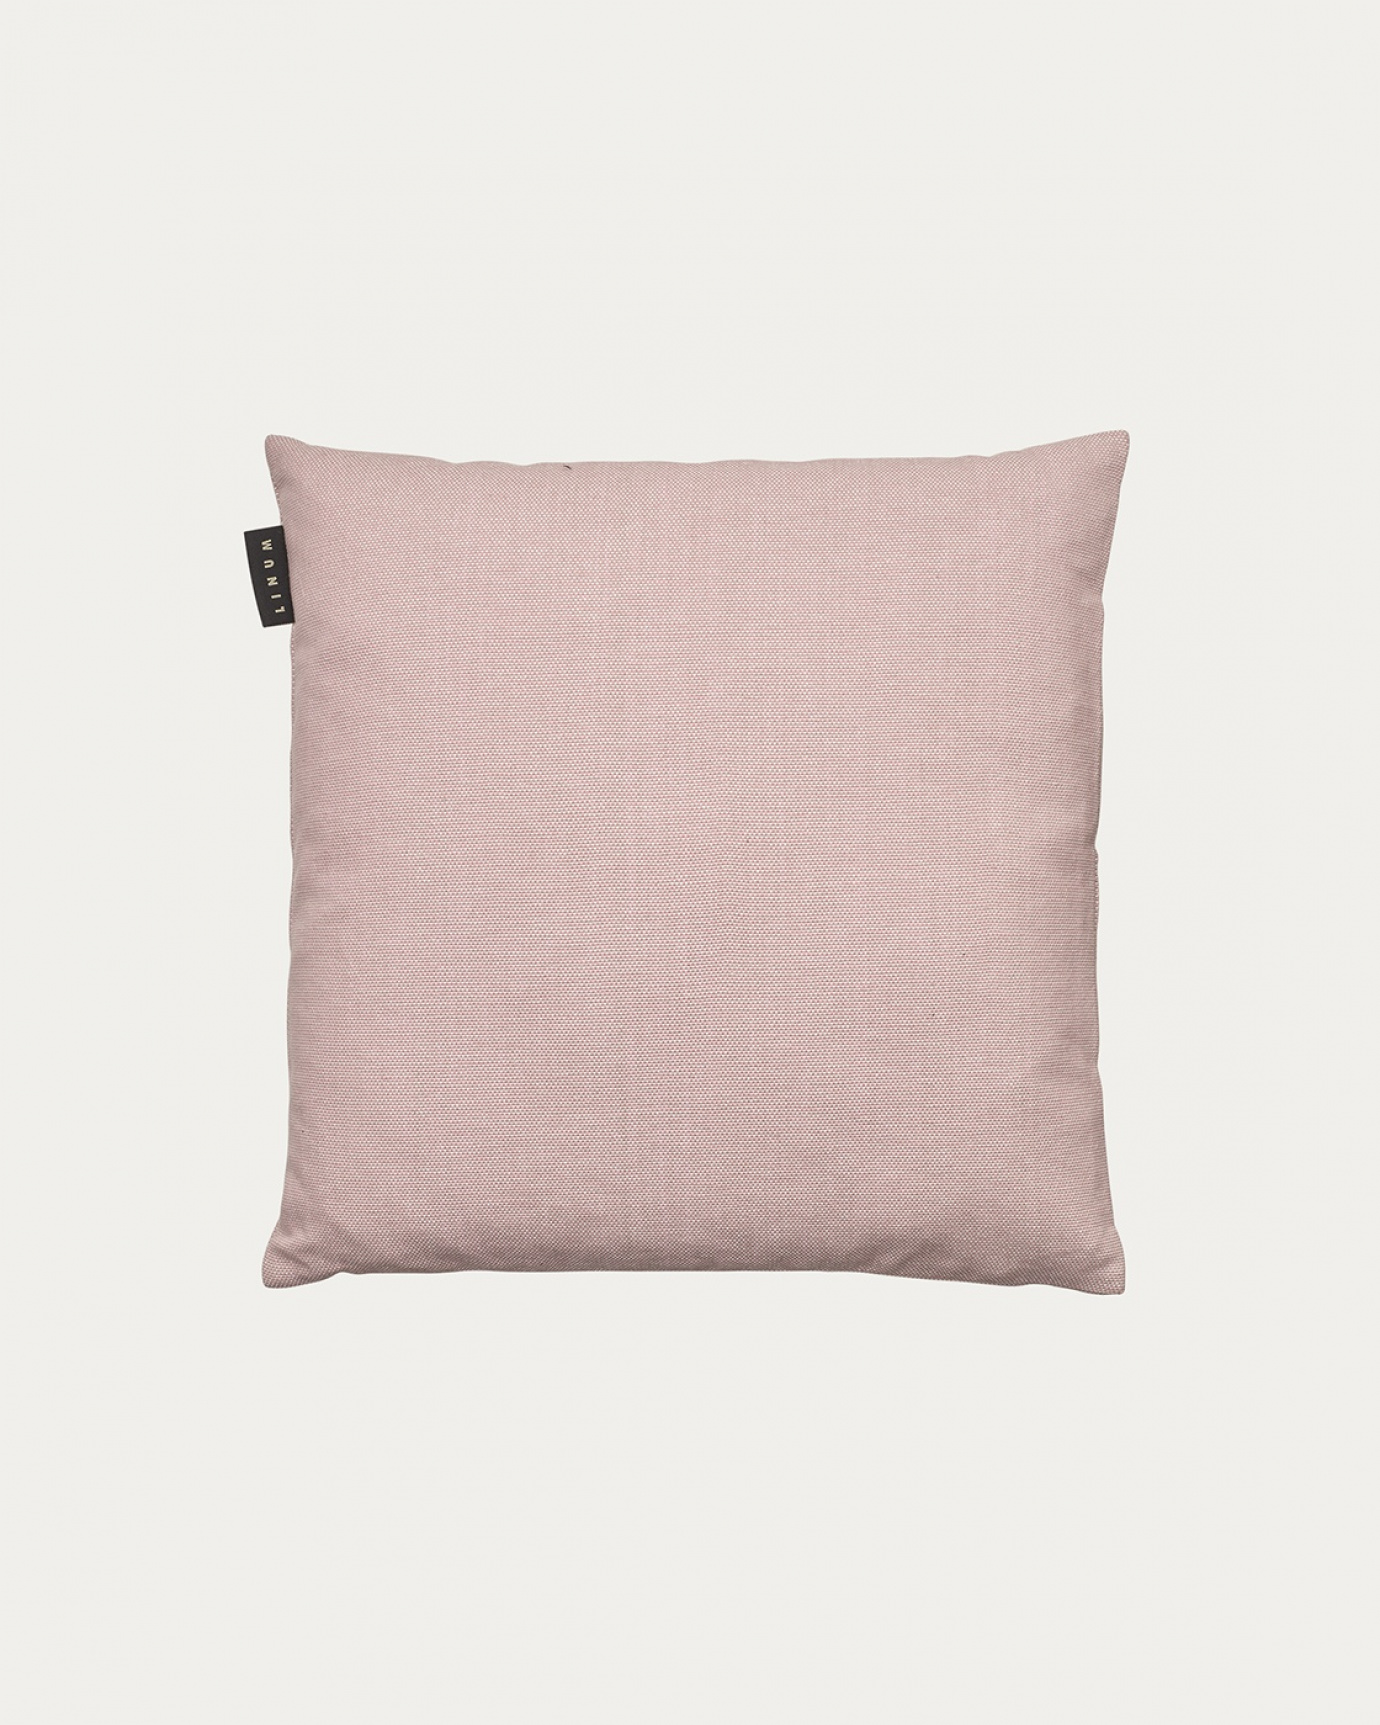 Immagine prodotto rosa antico PEPPER copricuscini in morbido cotone di LINUM DESIGN. Facile da lavare e resistente per generazioni. Dimensioni 40x40 cm.